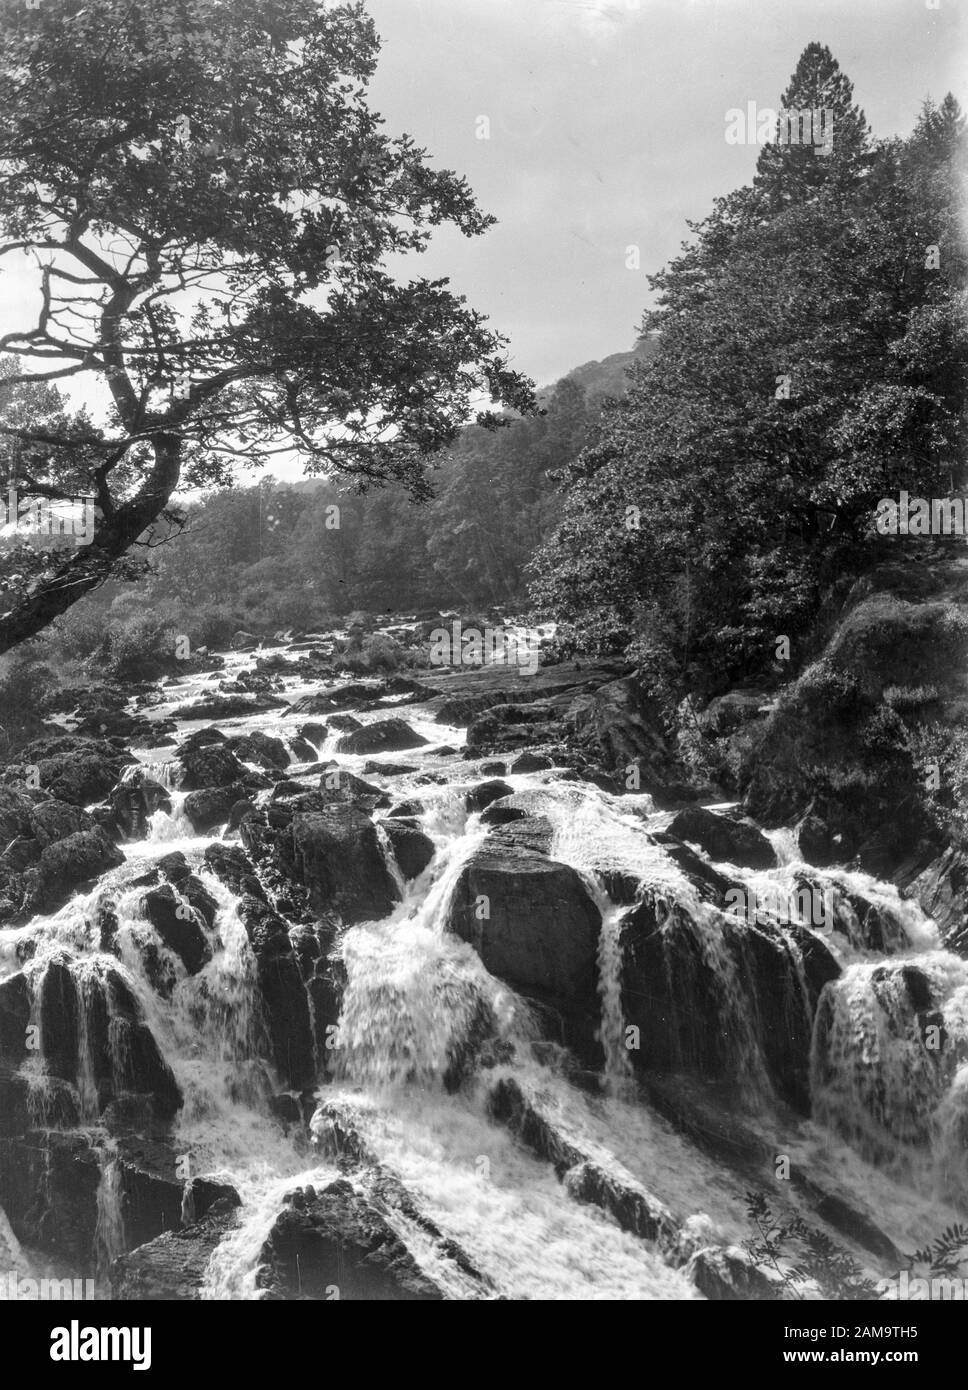 Archivio immagine circa 1920 di una cascata, possibilmente nel West CountrySanning dal negativo originale. Foto Stock